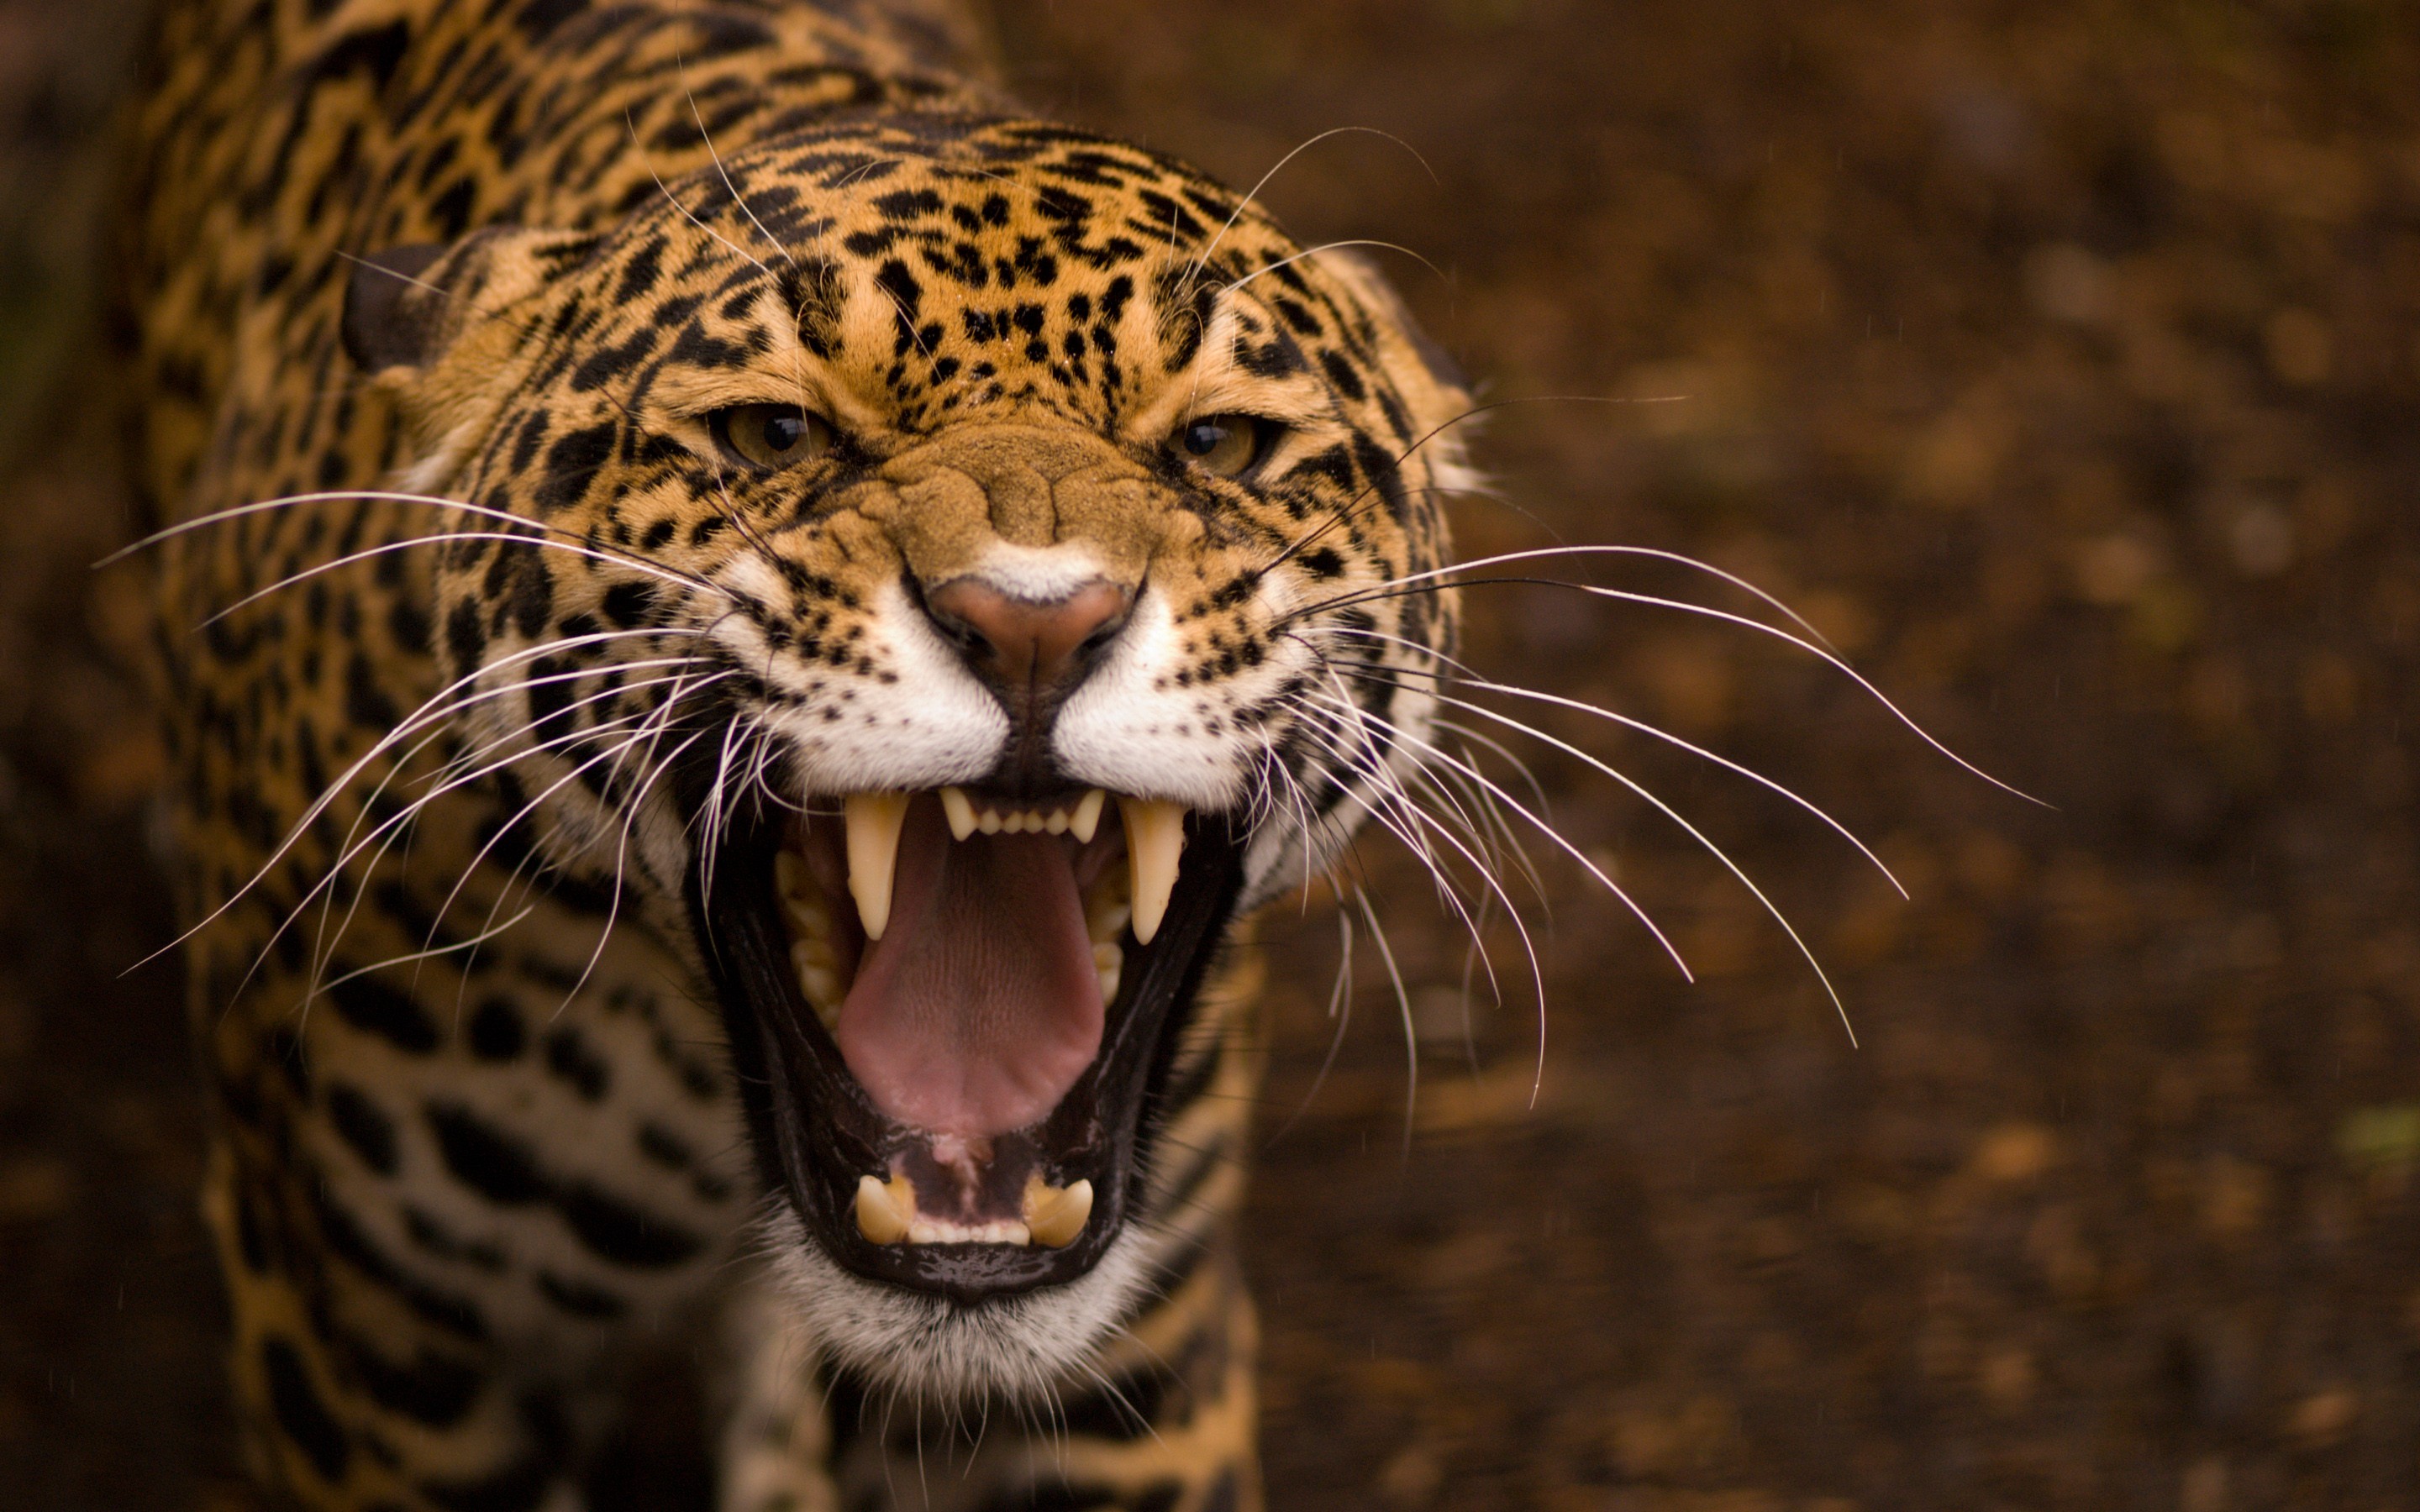 Wallpapers Jaguar wildlife leopard on the desktop